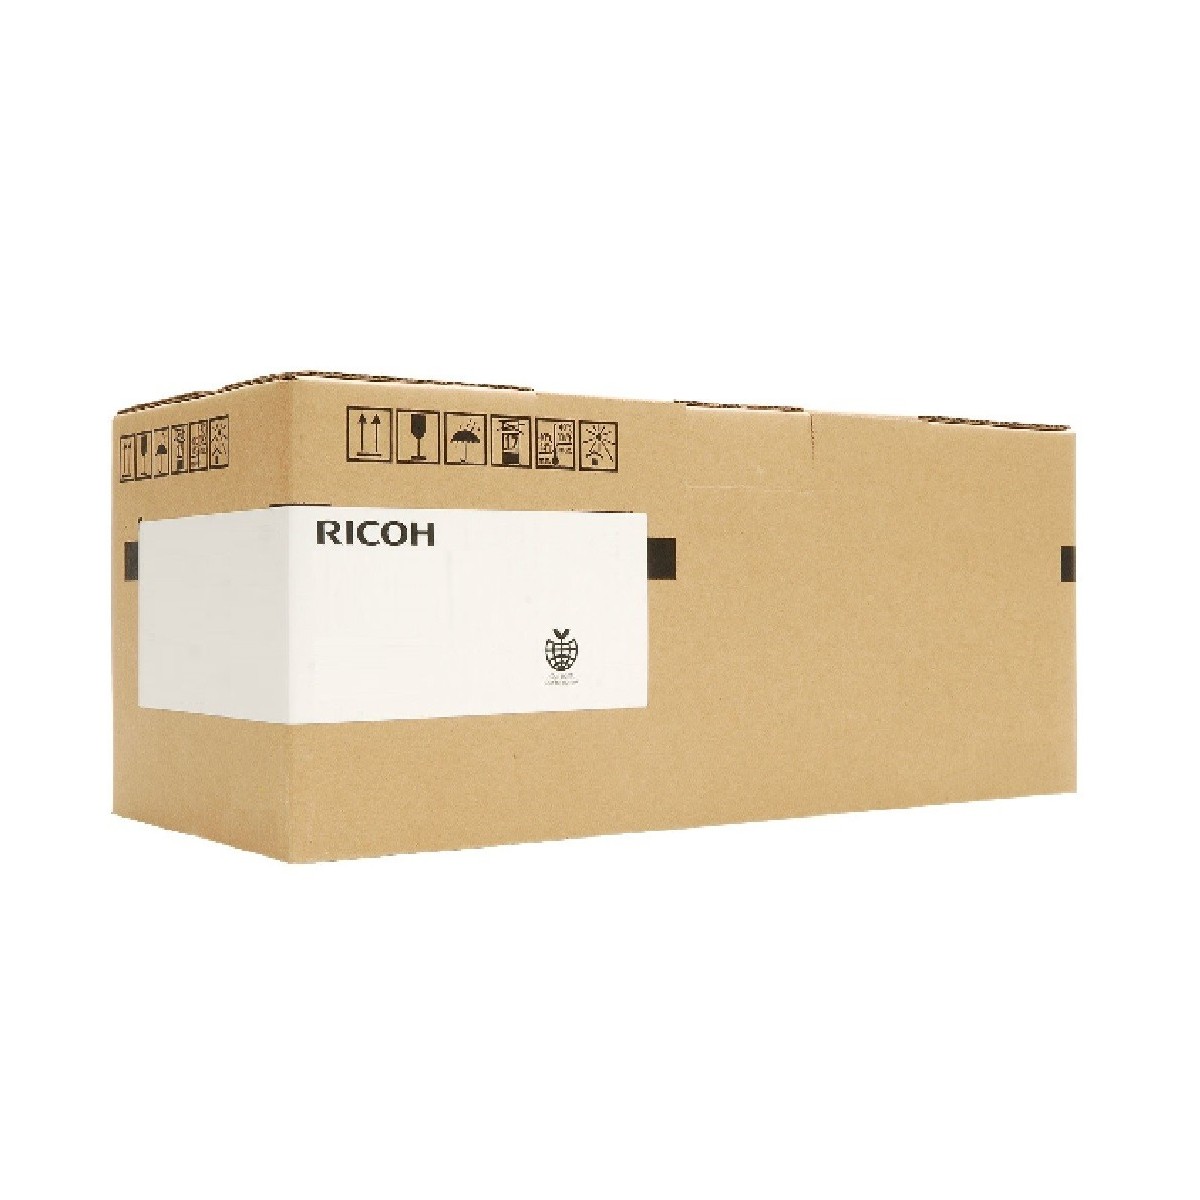 Ricoh D0149640 - 450000 pages - Black - Ricoh - Aficio MP C6000 Aficio MP C7500 imagio MP C7500 imagio MP C7500SP - 650 g